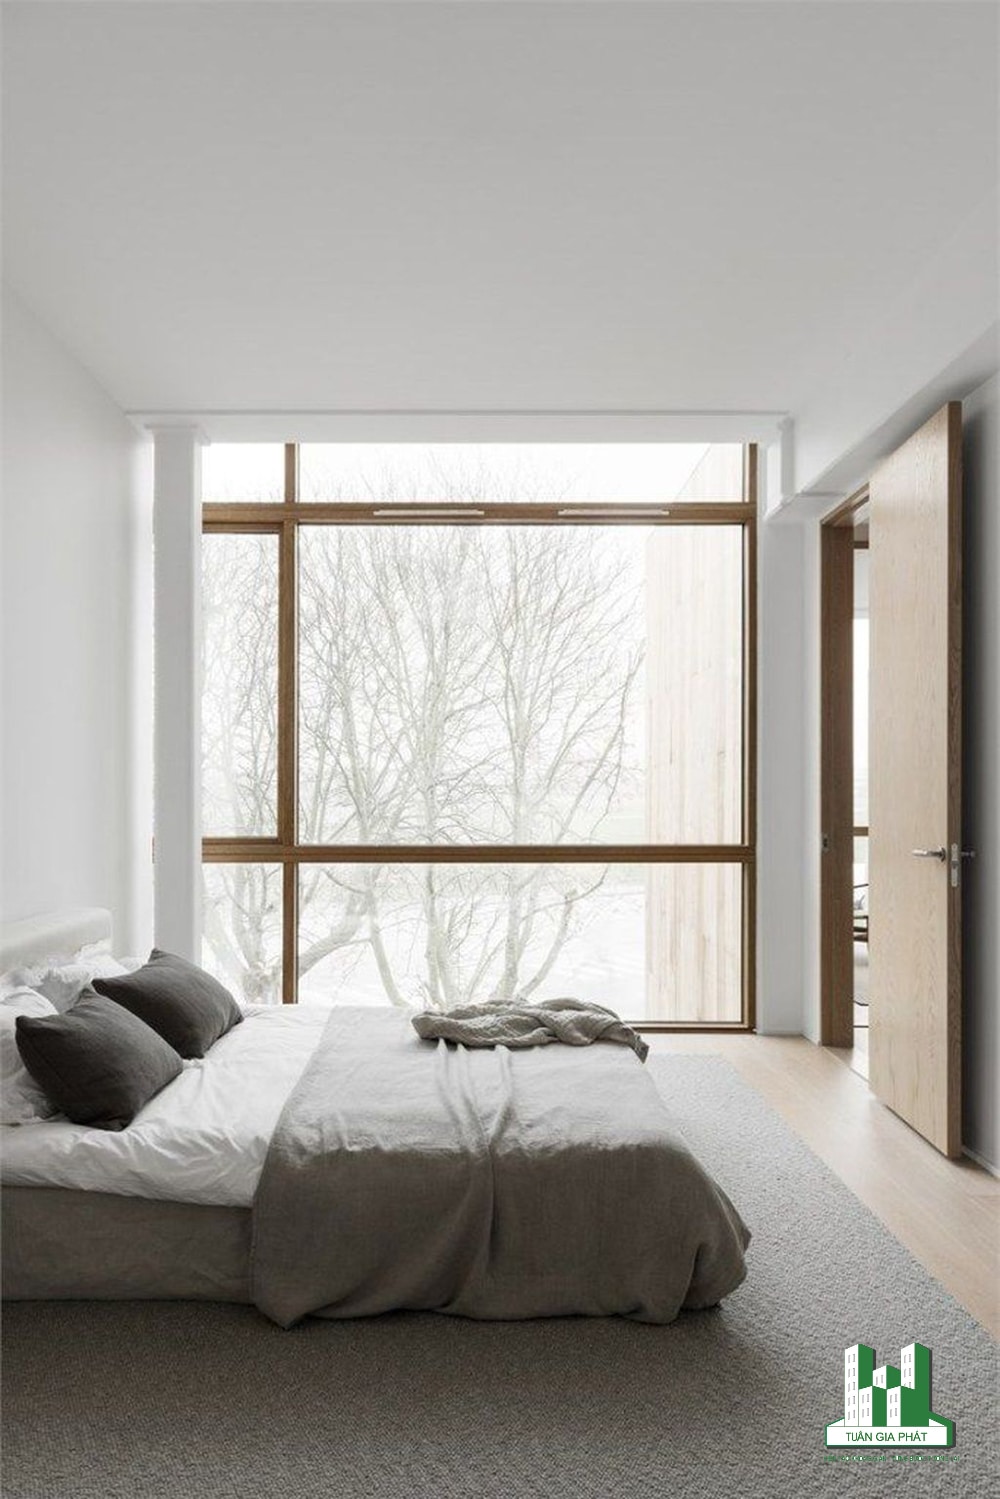 Phòng ngủ Zen trung tính với giường ngay trên sàn và tường lắp kính để thưởng ngoạn quang cảnh bên ngoài cùng bộ khăn trải giường cũng cùng tone màu trung tính.